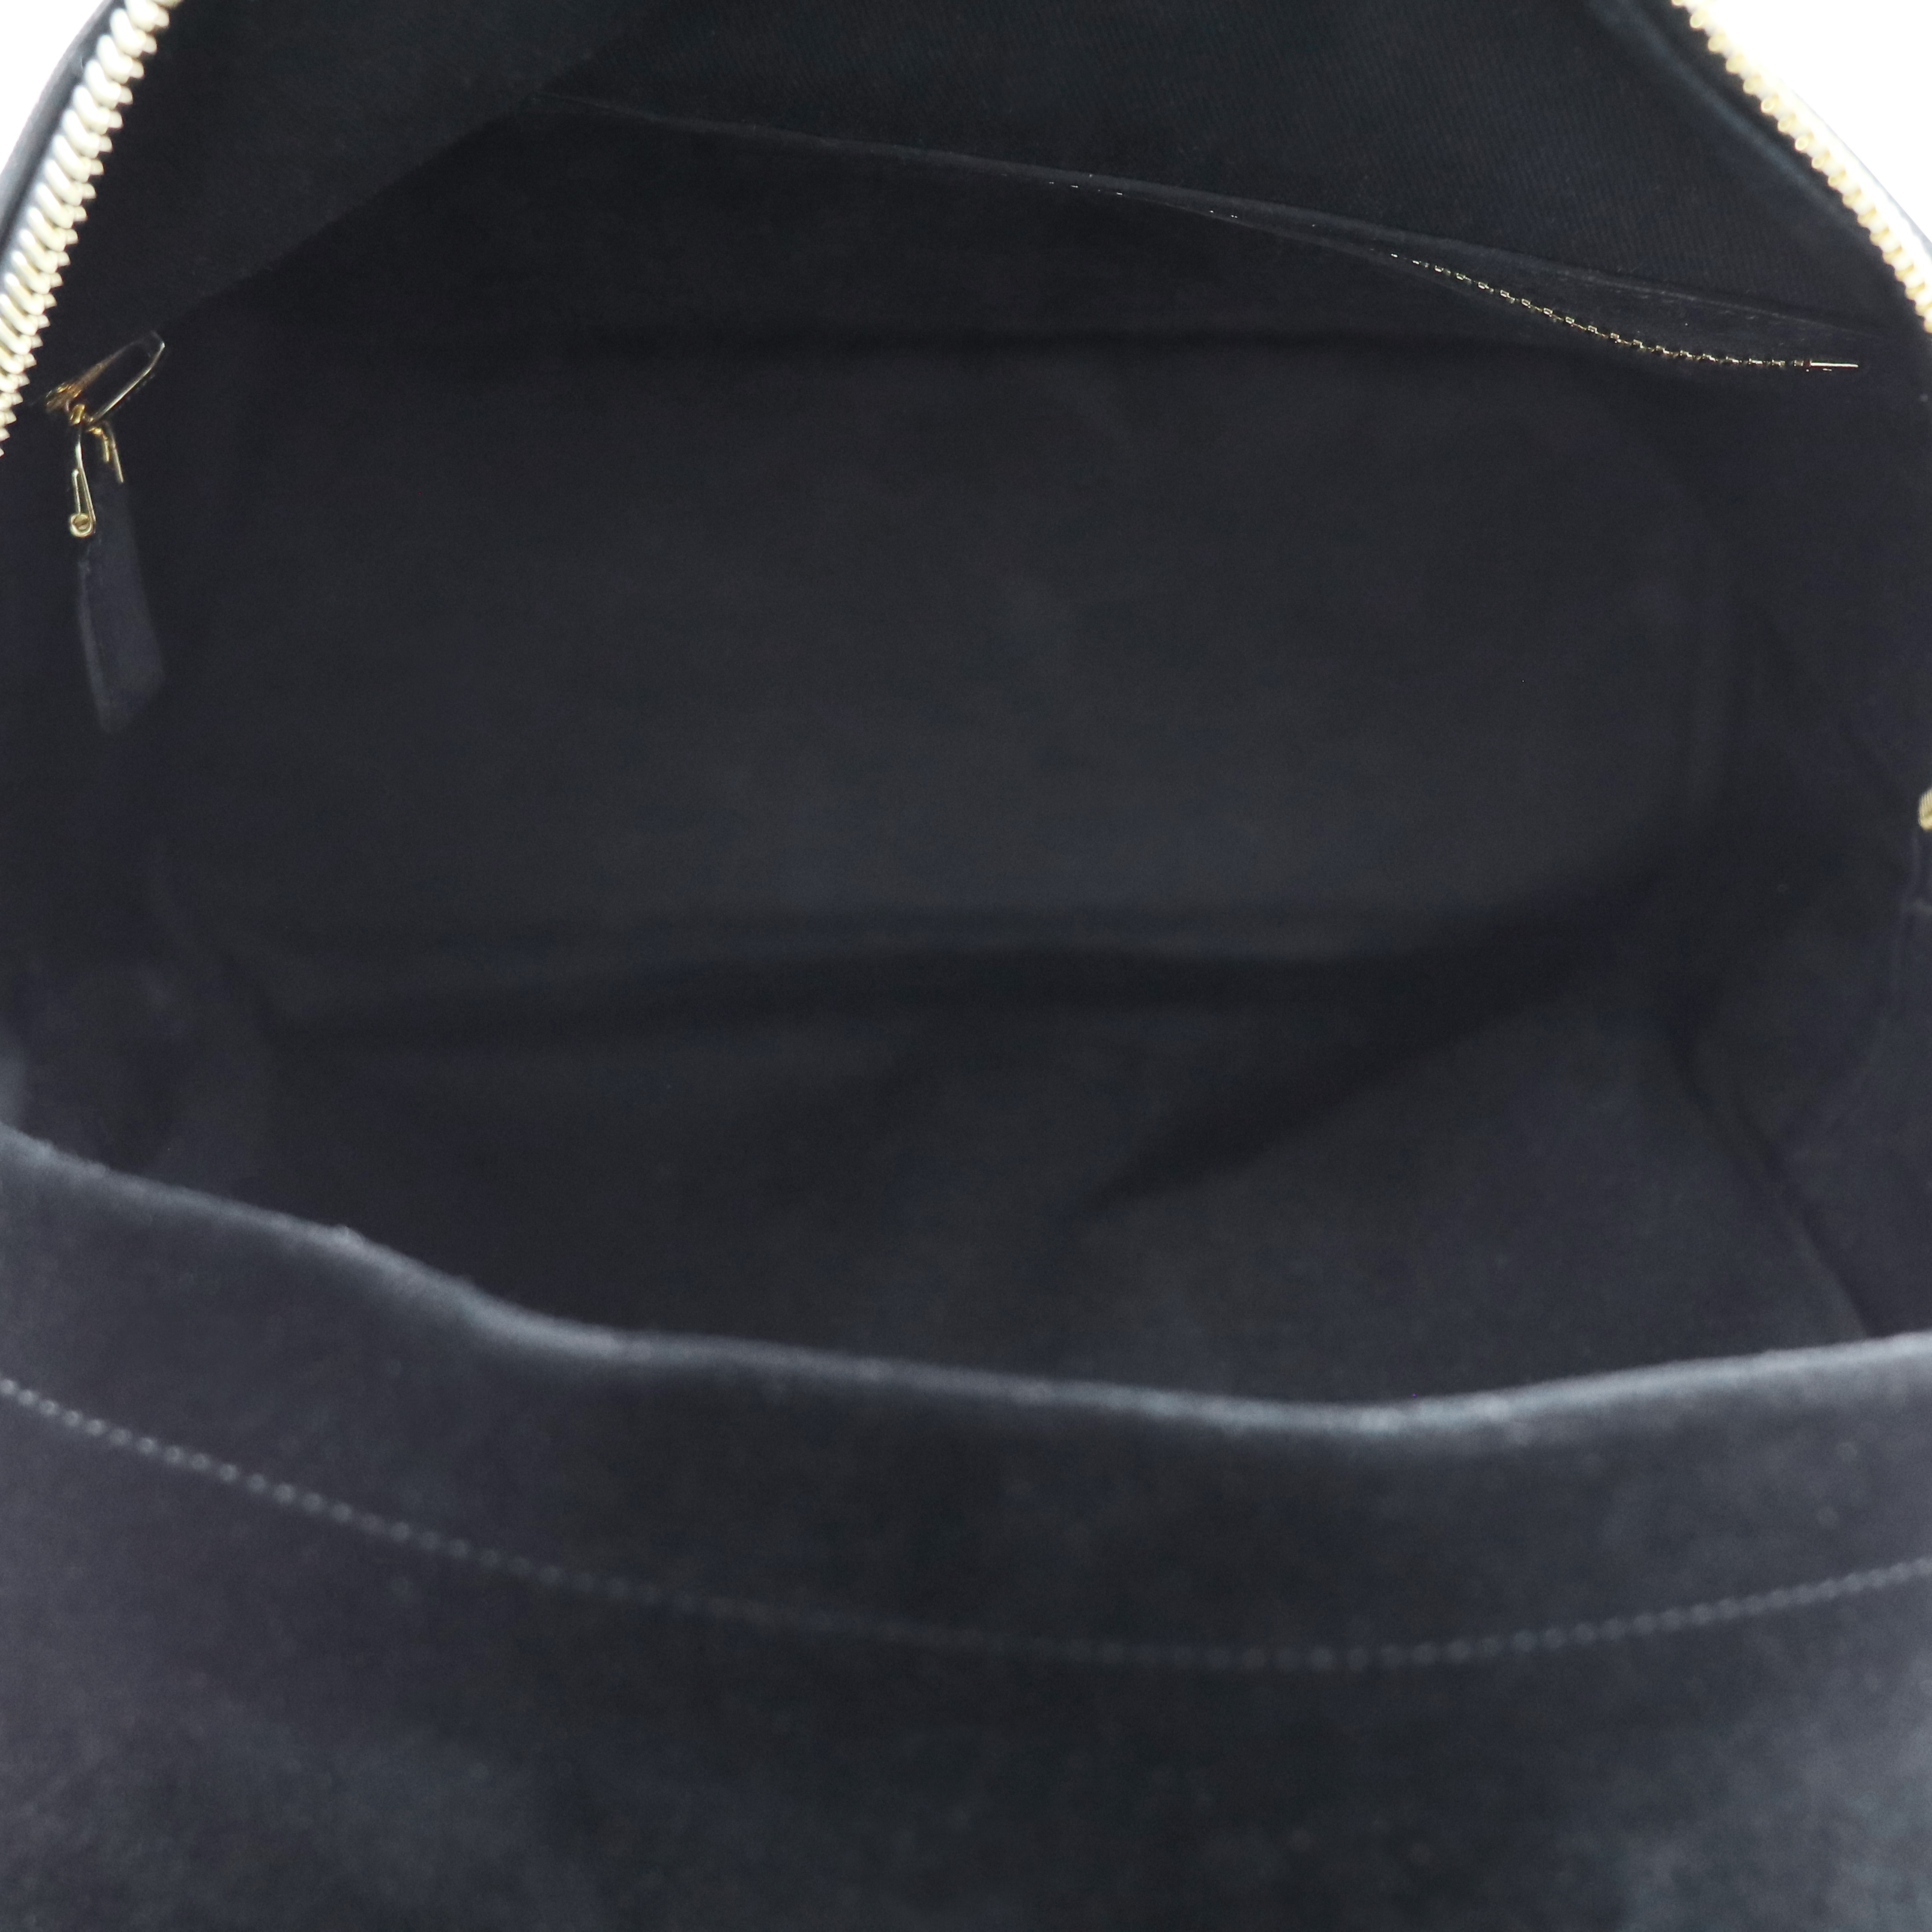 Buckley Backpack Bag - Black Suede - 12